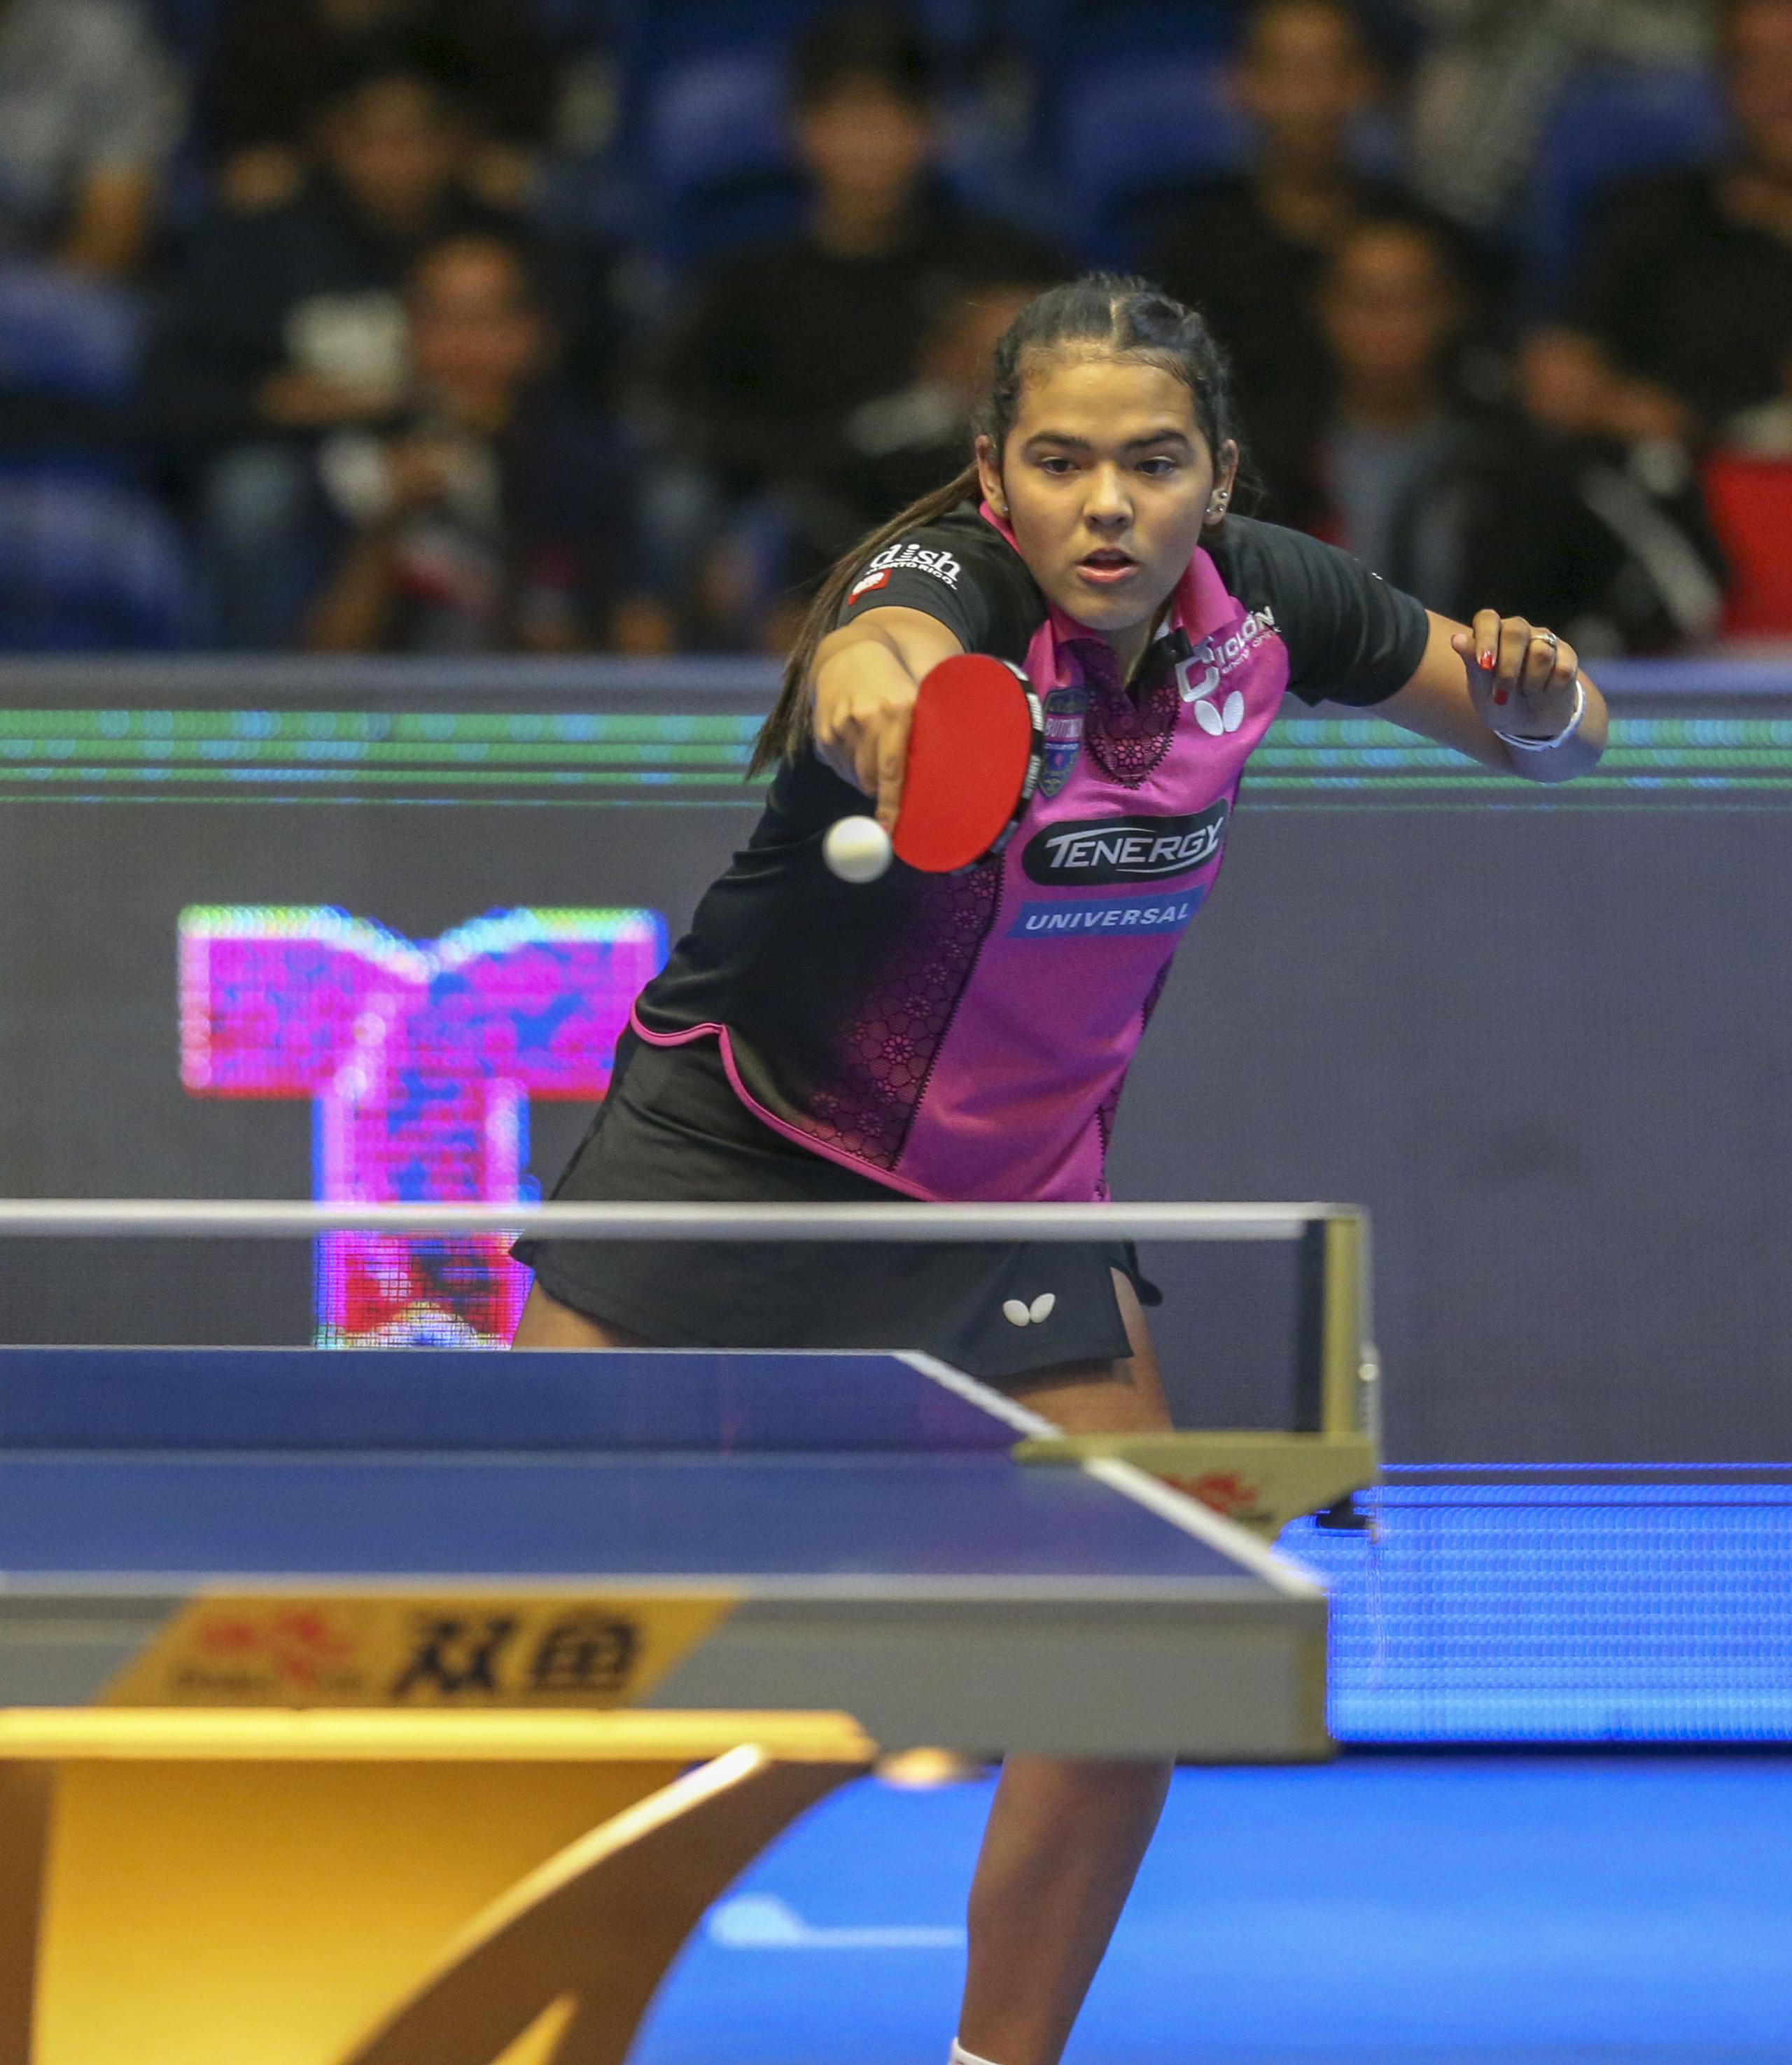 La utuadeña Adriana Díaz está entre las últimas ocho jugadoras del evento World Table Tennis Star Contender que se celebra en Doha, Catar.